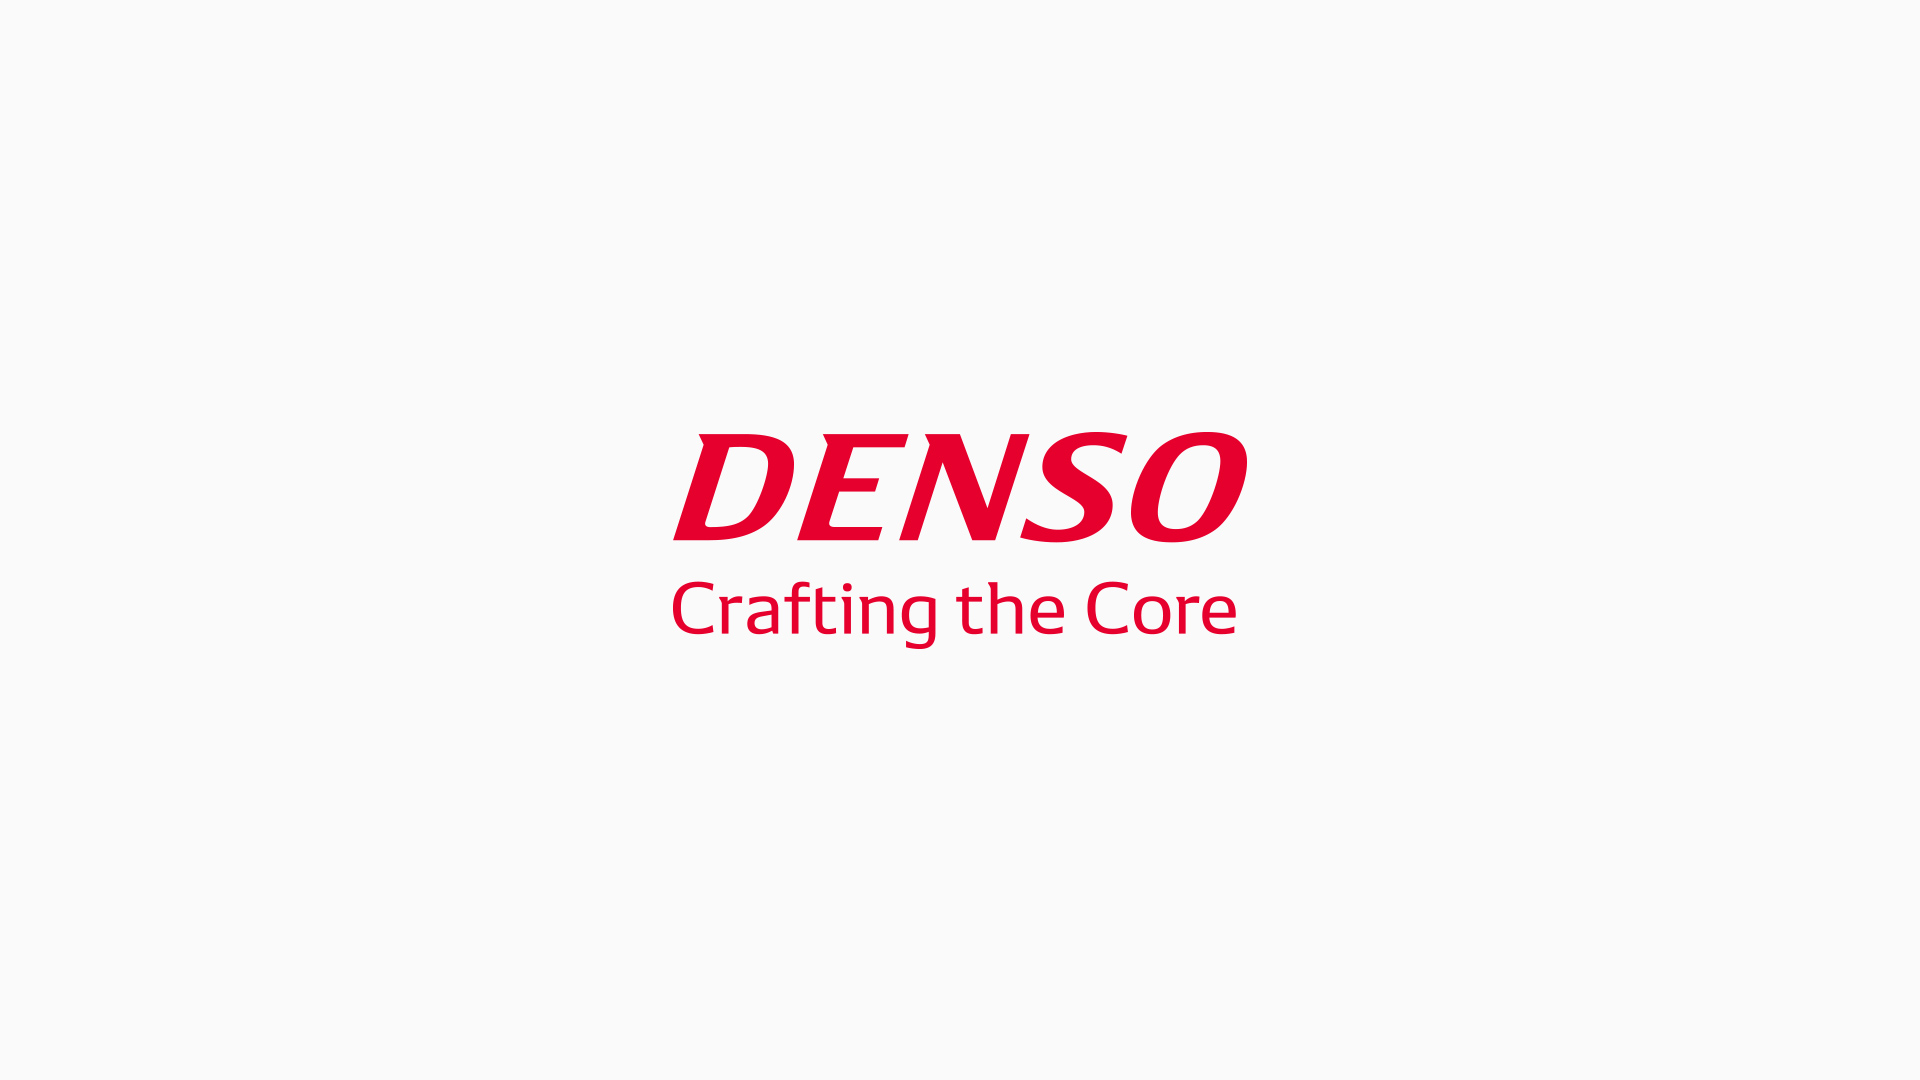 DENSOがQRコードを開発し使用するための授賞式でIEEEエンタープライズイノベーション賞を受賞ニュースルーム| ニュース